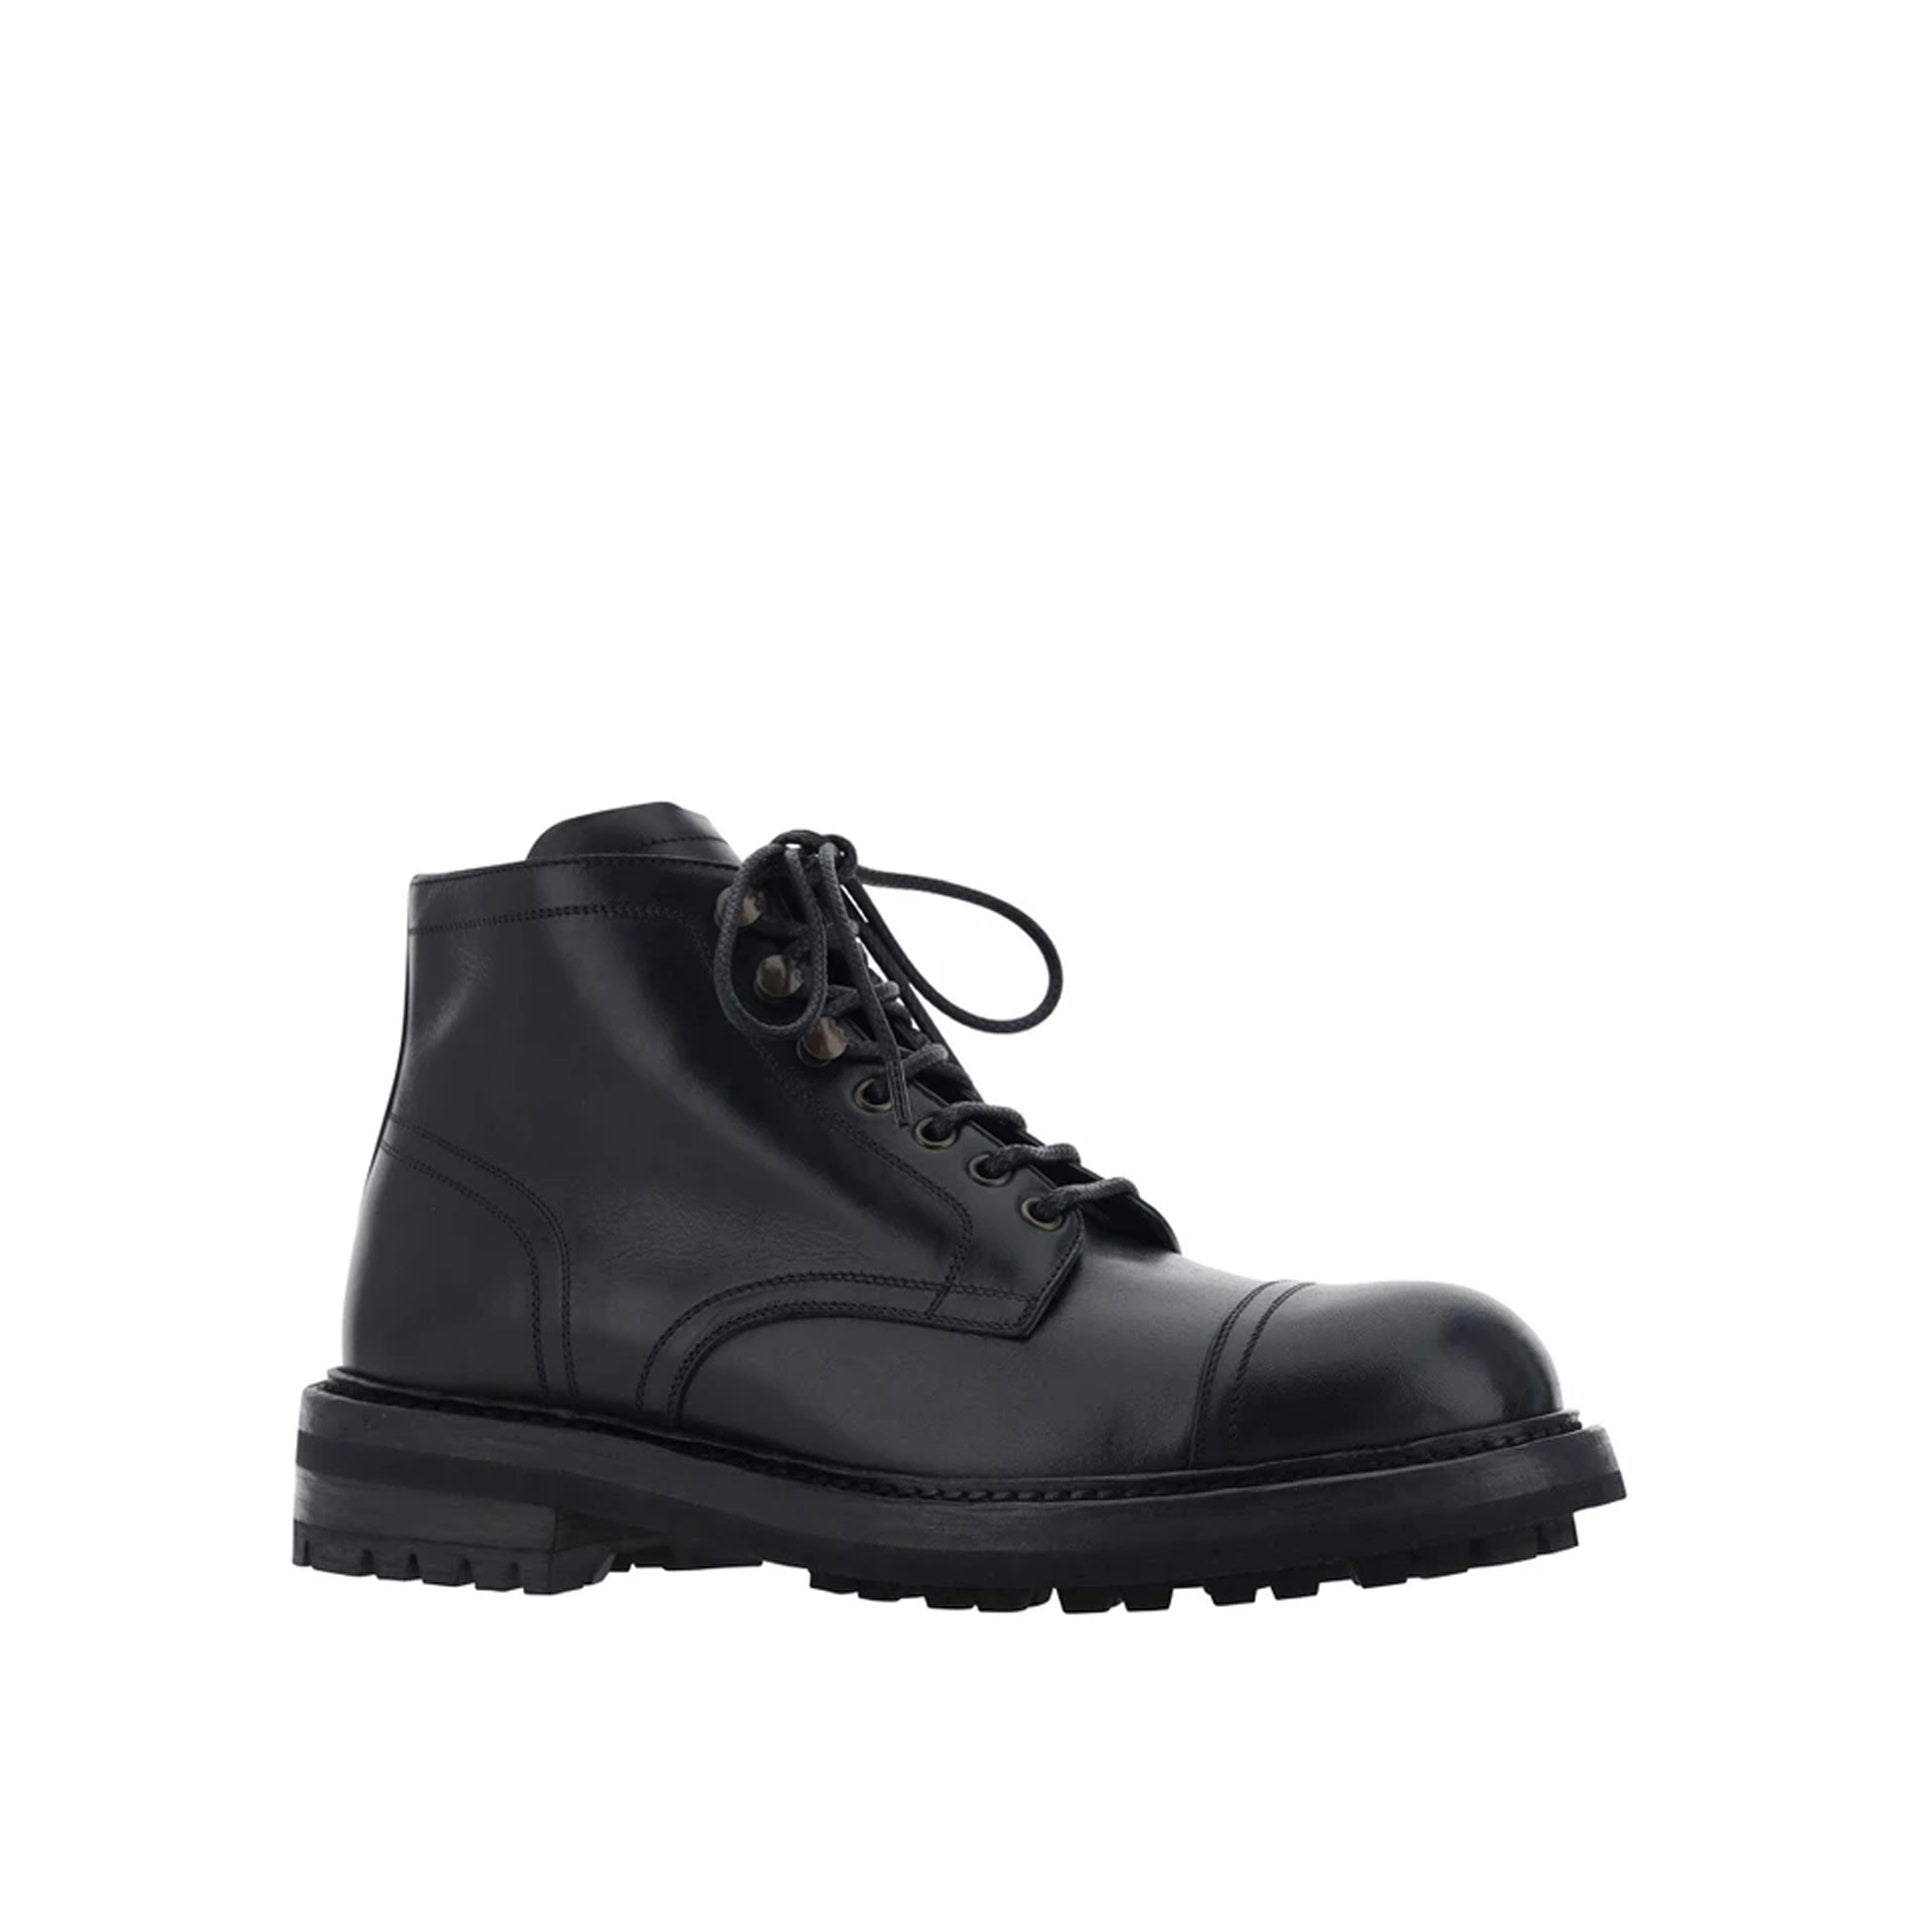 DOLCE___GABBANA_Dolce___Gabbana_Lace-Up_Leather_Boots_A60316AO018_80999_Black_2.jpg